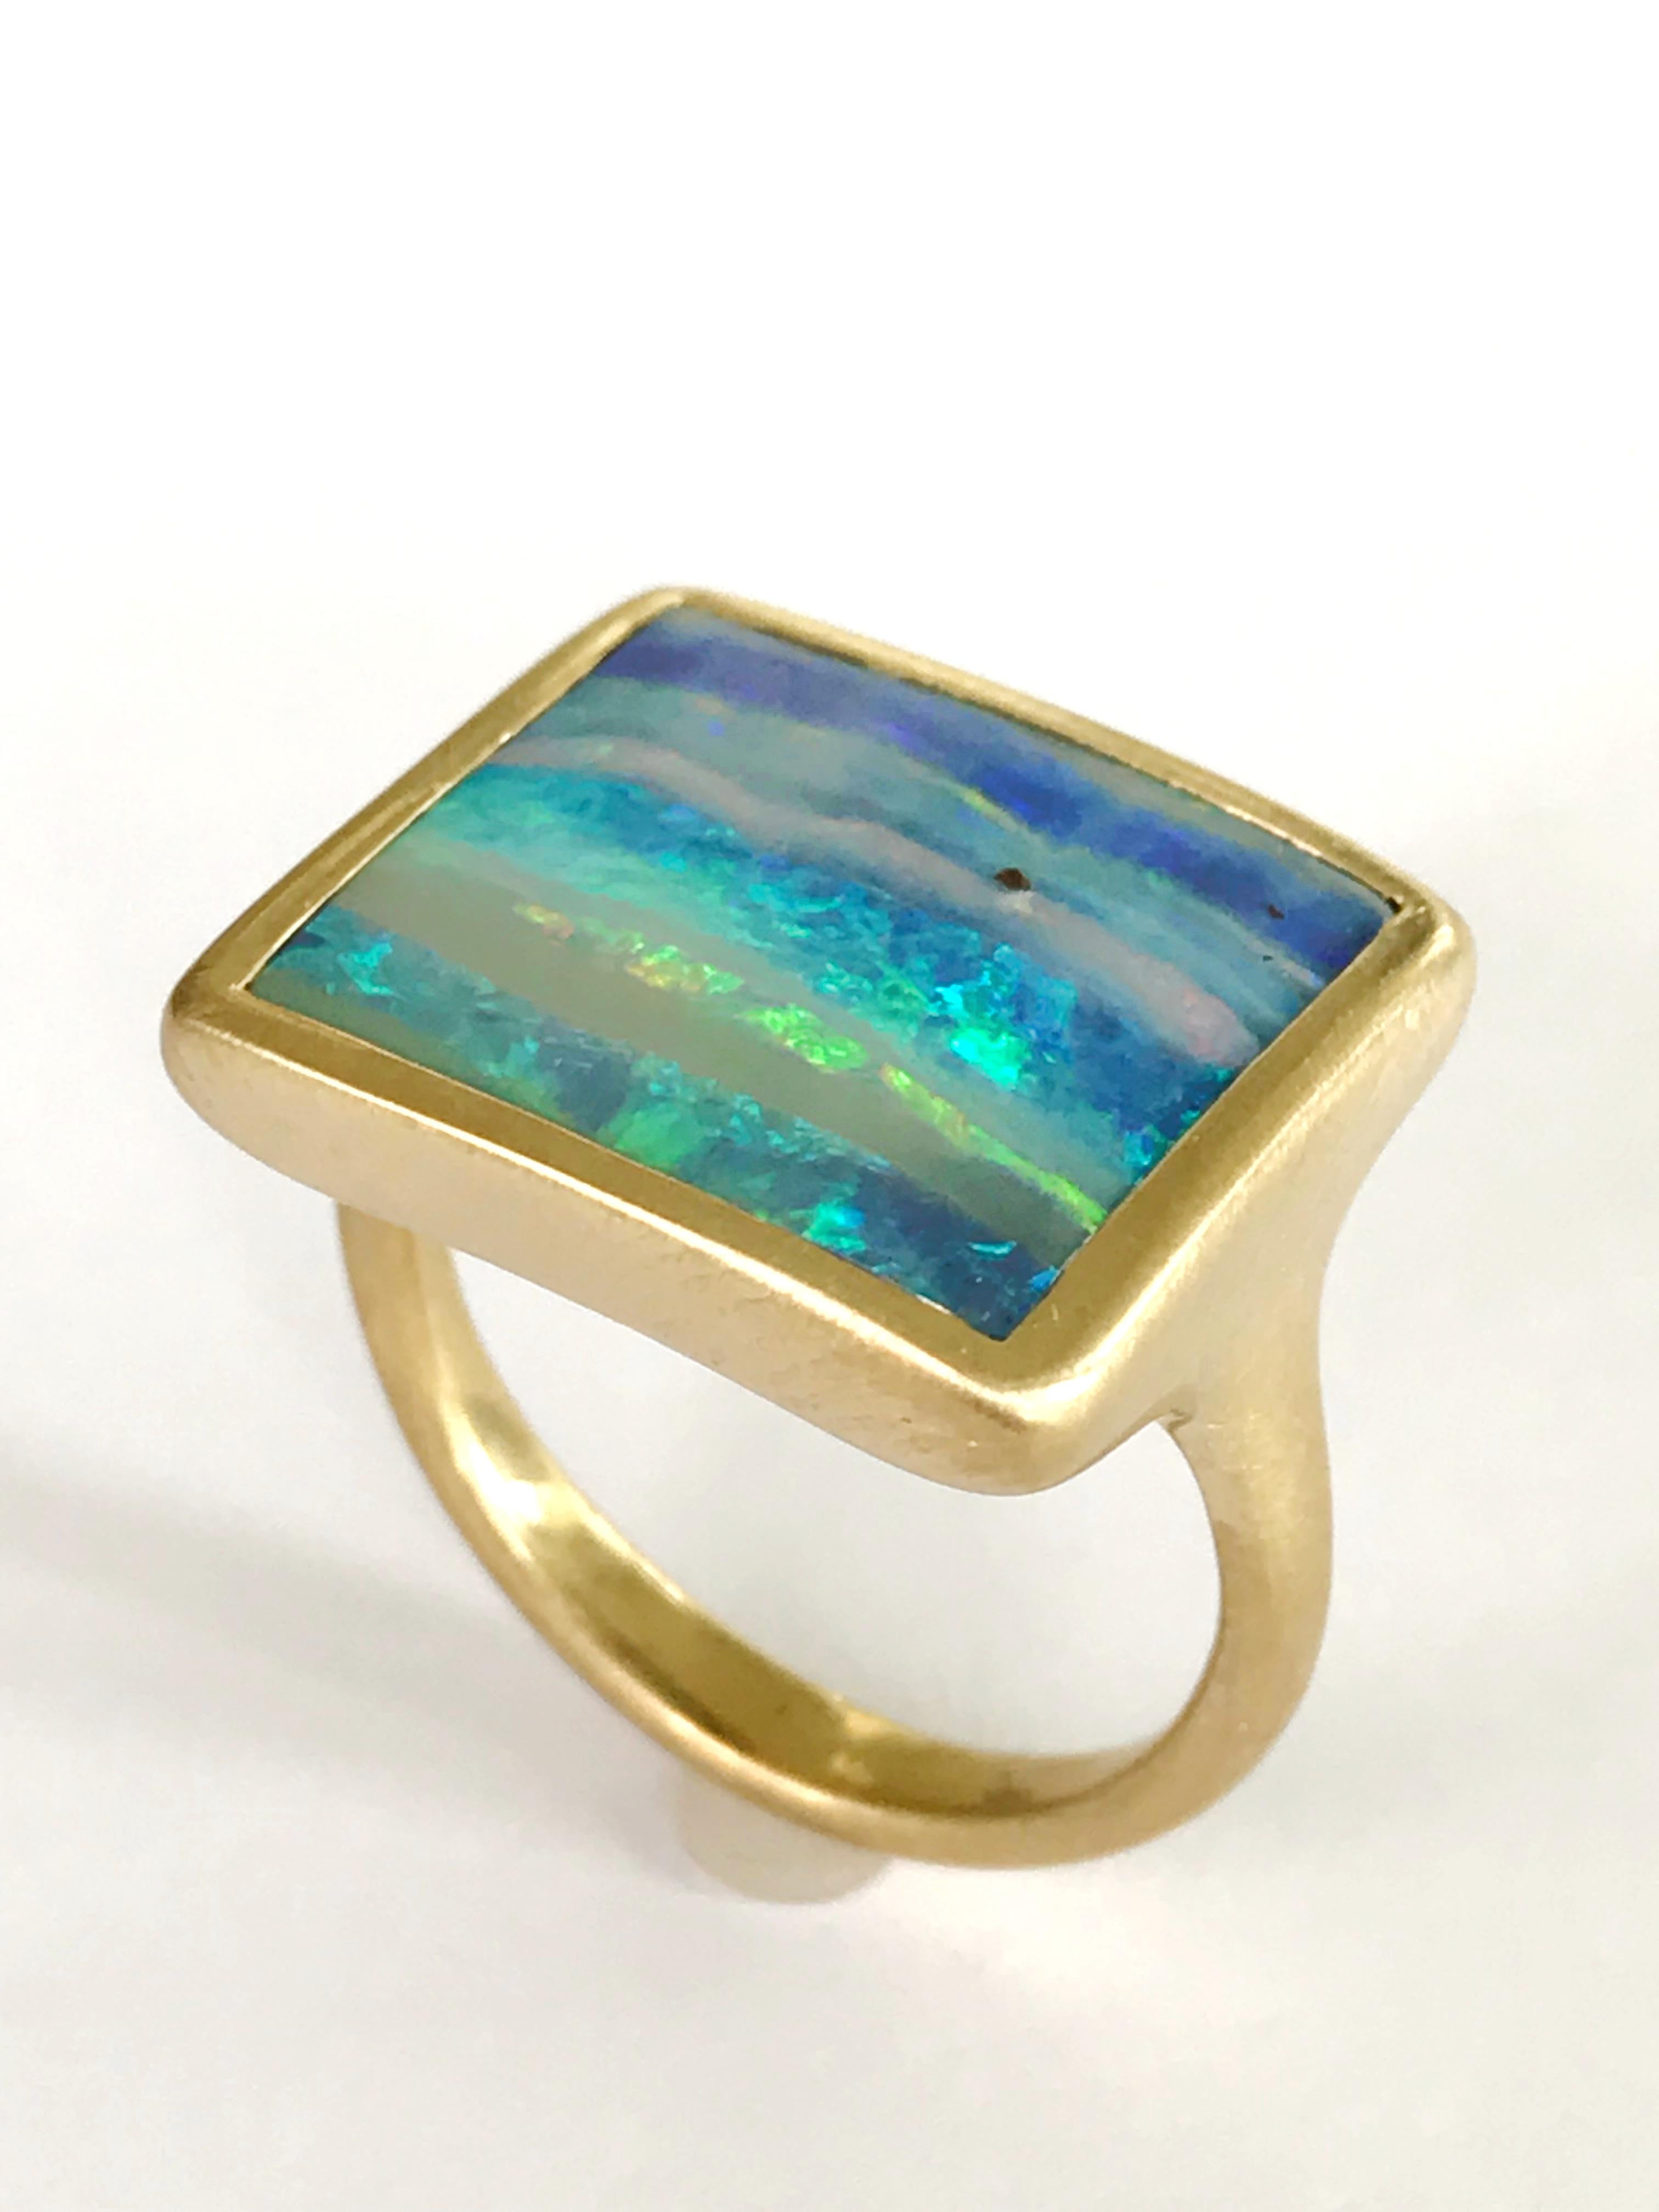 Contemporary Dalben Design Blue Green Australian Boulder Opal Rectangular Yellow Gold Ring